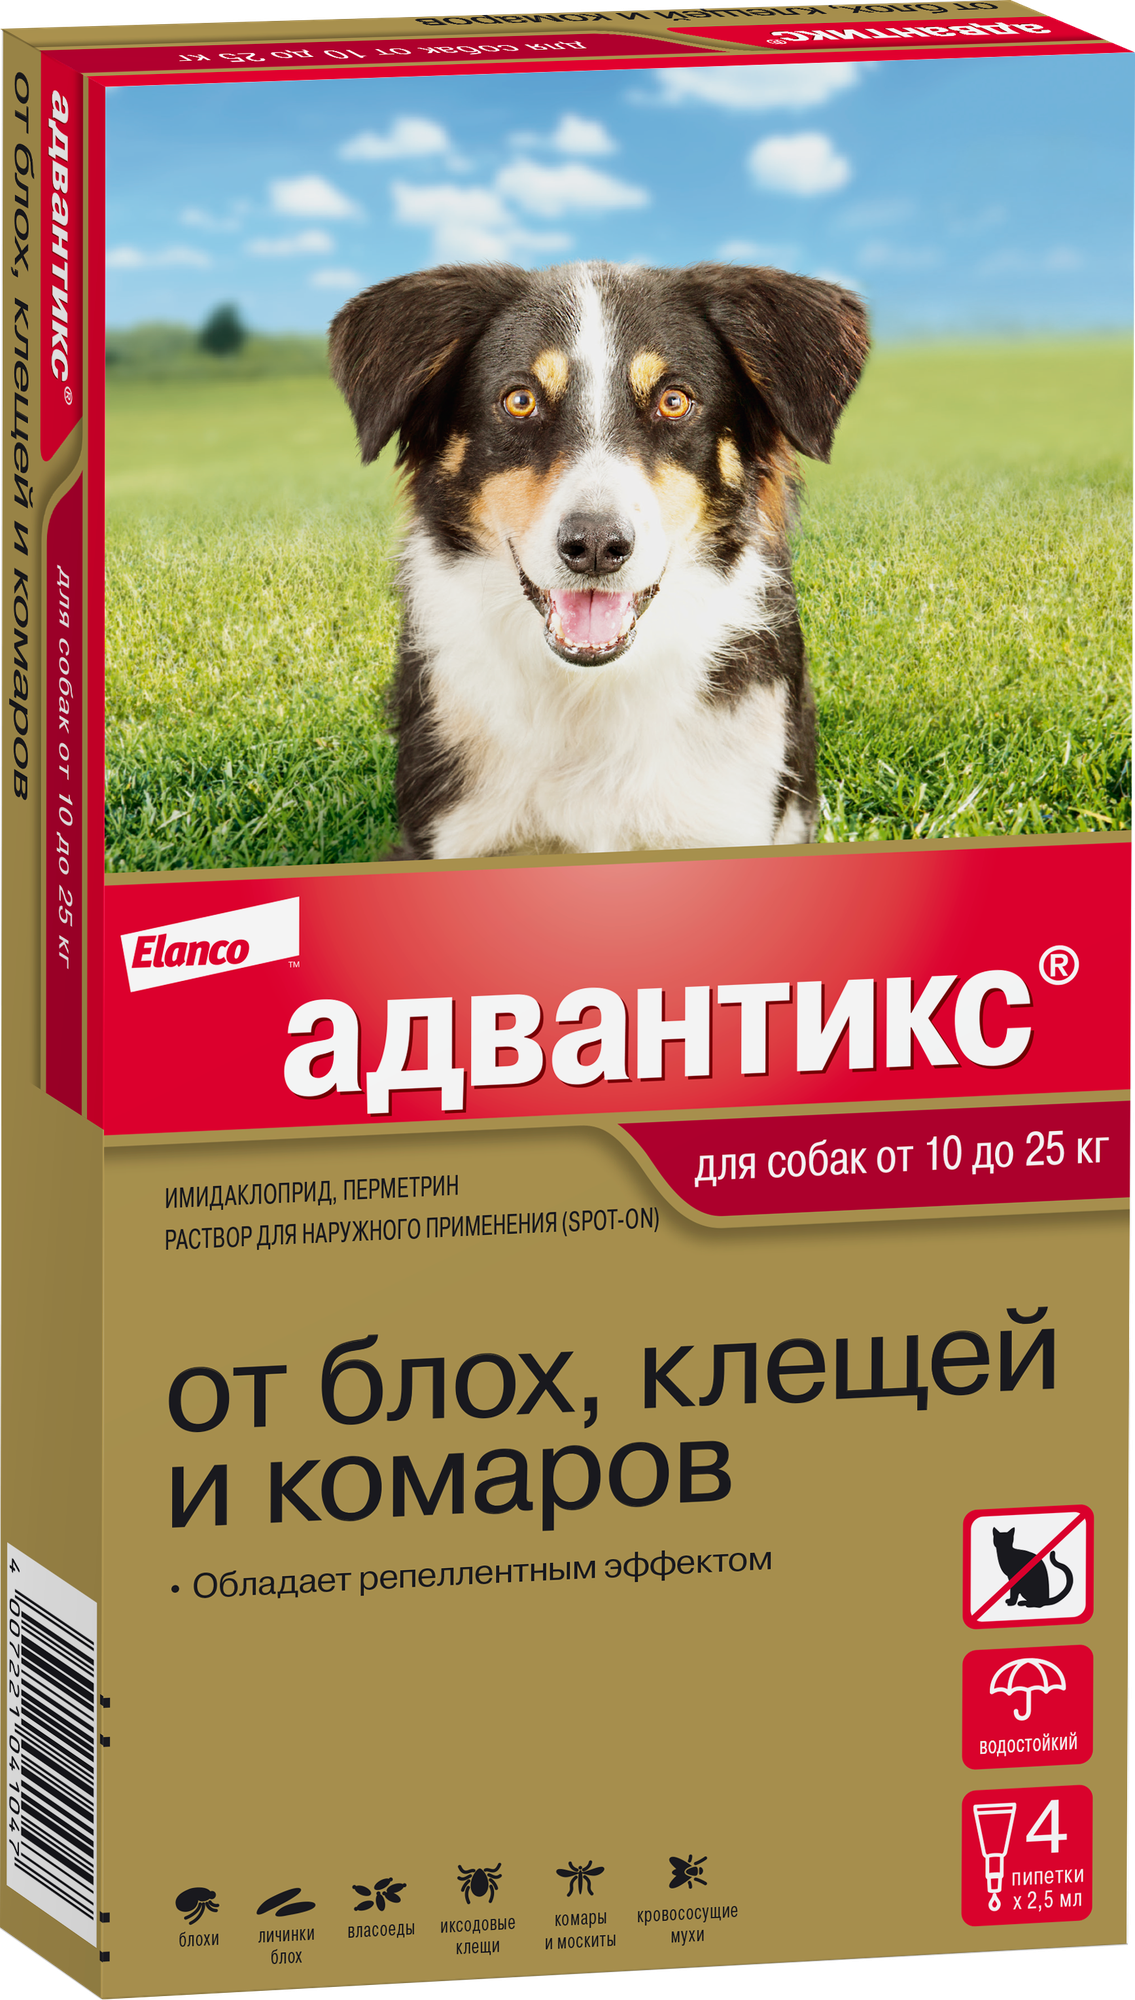 Адвантикс (Elanco)  для собак от 10 до 25 кг для защиты от блох, иксодовых клещей и летающих насекомых и переносимых ими заболеваний, 4 пипетки в упаковке